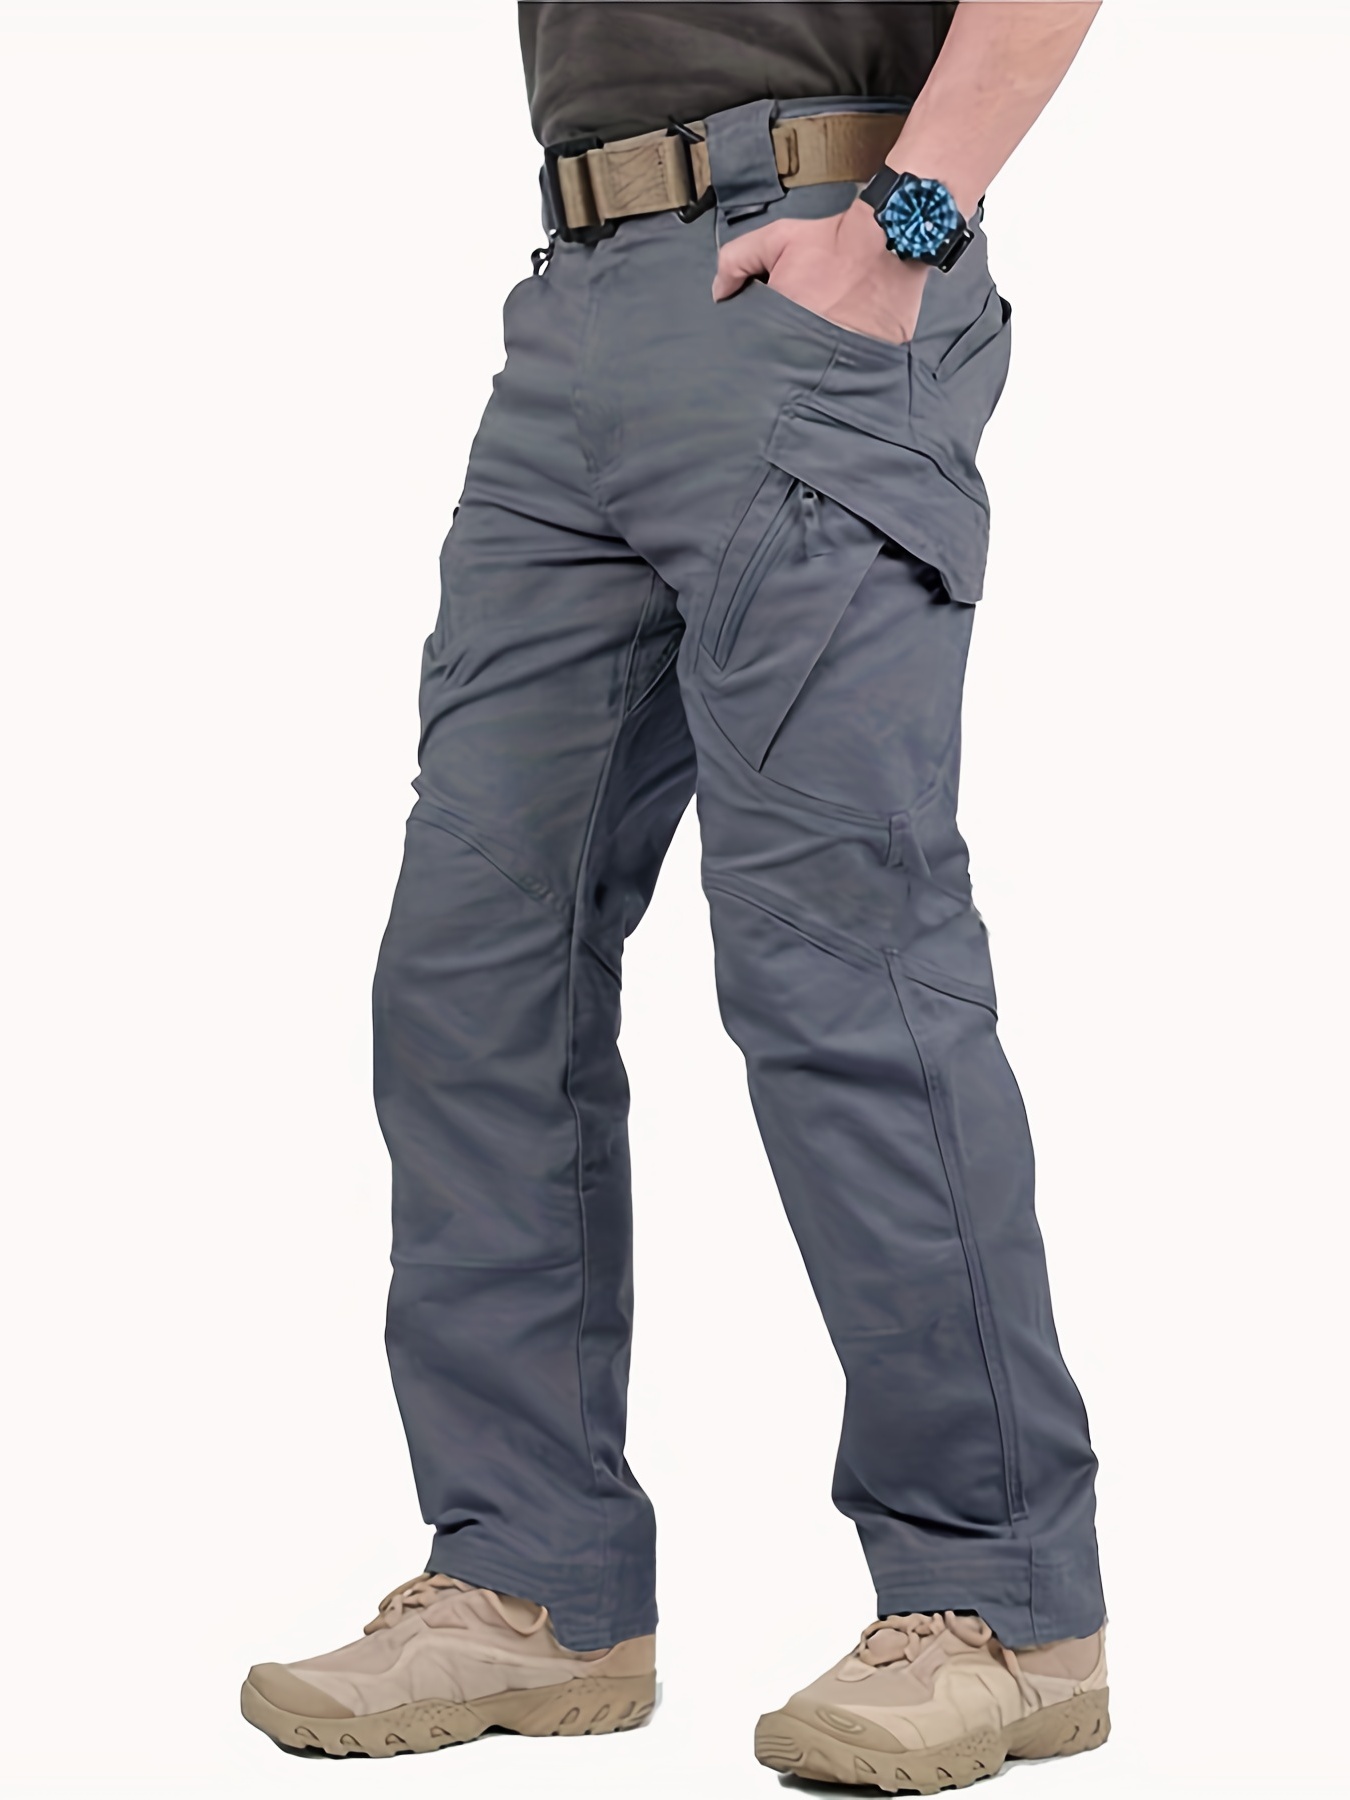 Pantalones de hombre Nuevo soldado Pantalones impermeables tácticos  Pantalones de escalada Hombres resistentes al desgaste Pantalones de  trabajo de carga Combate al aire libre Fz5-2